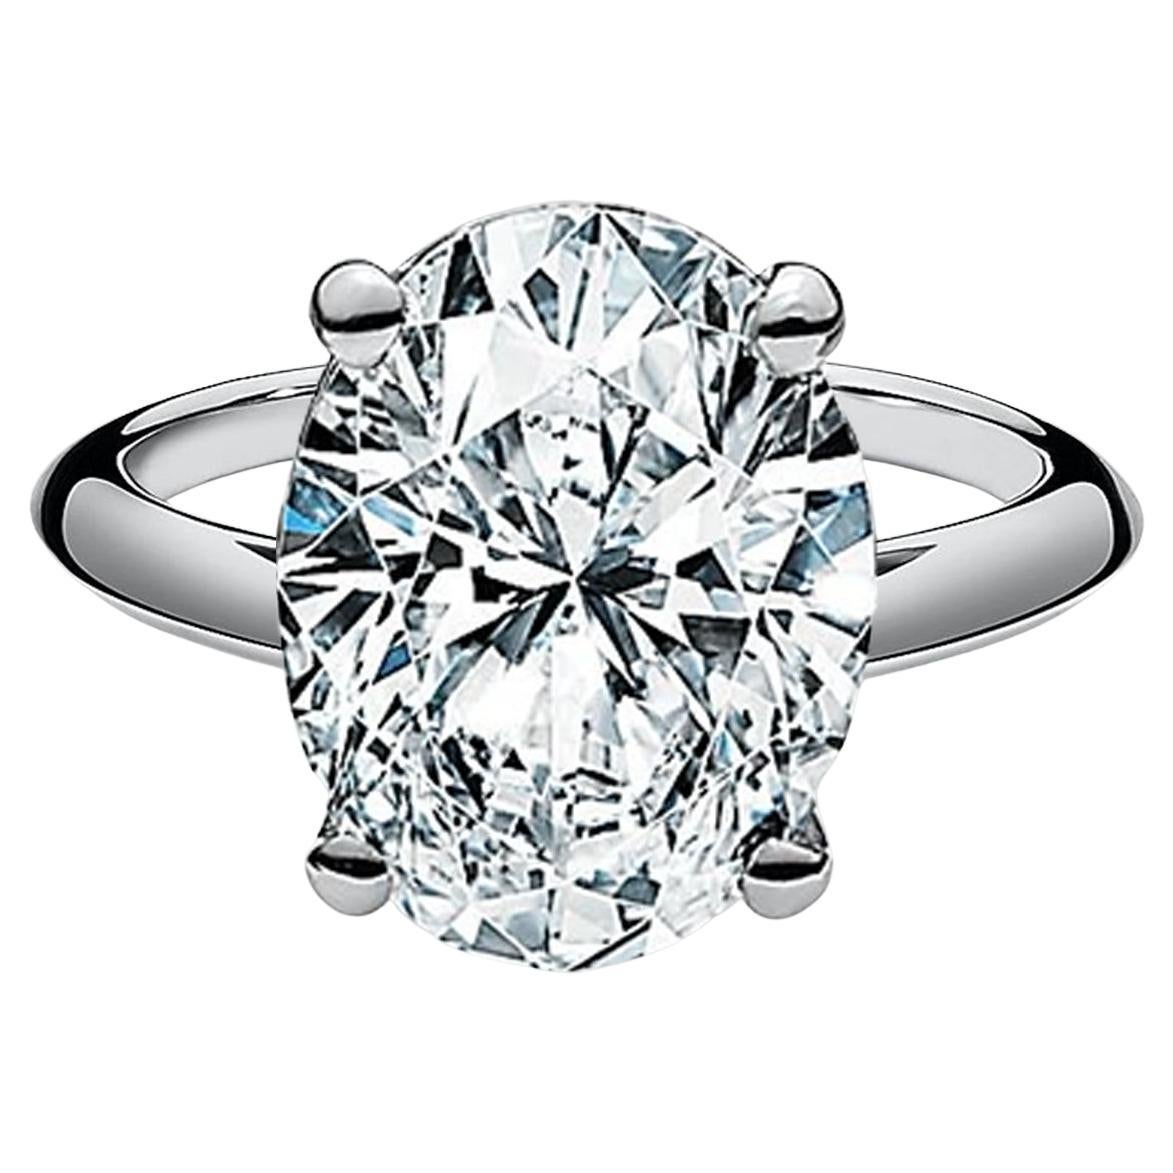 Bague de fiançailles Tiffany & Co. 5,01 ct Platinum Oval Cut Diamond Solitaire Engagement Ring. 



La bague pèse 7 grammes, taille 6, le centre est un diamant taille ovale pesant 5.01 ct, couleur F, pureté VS1. La pierre centrale présente une